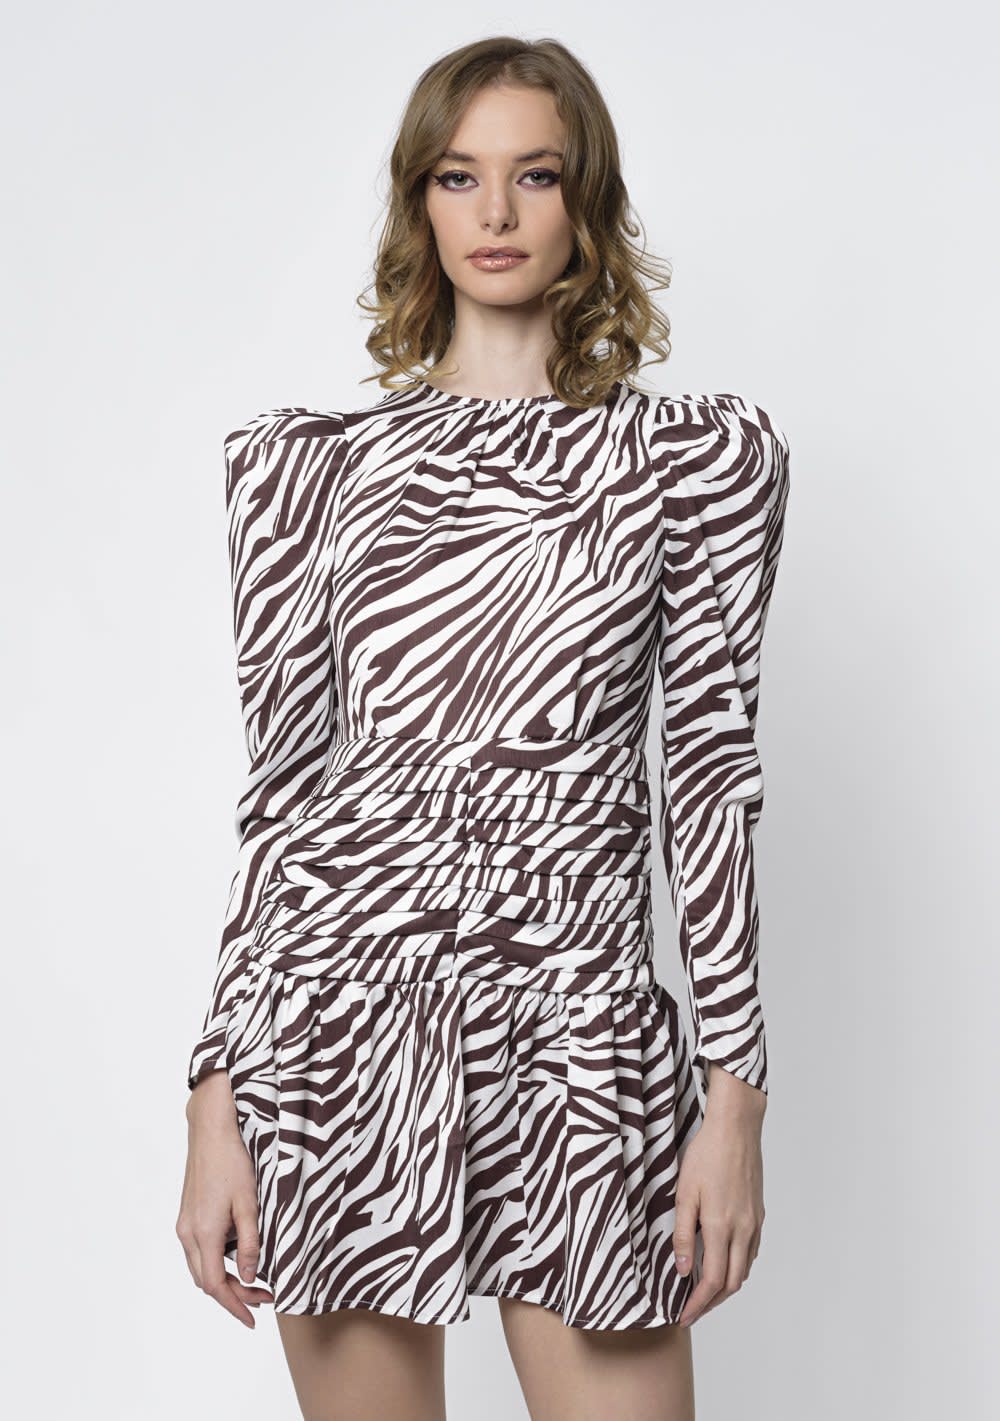 Vestido Animal Print Cebra. Talla L (2570)